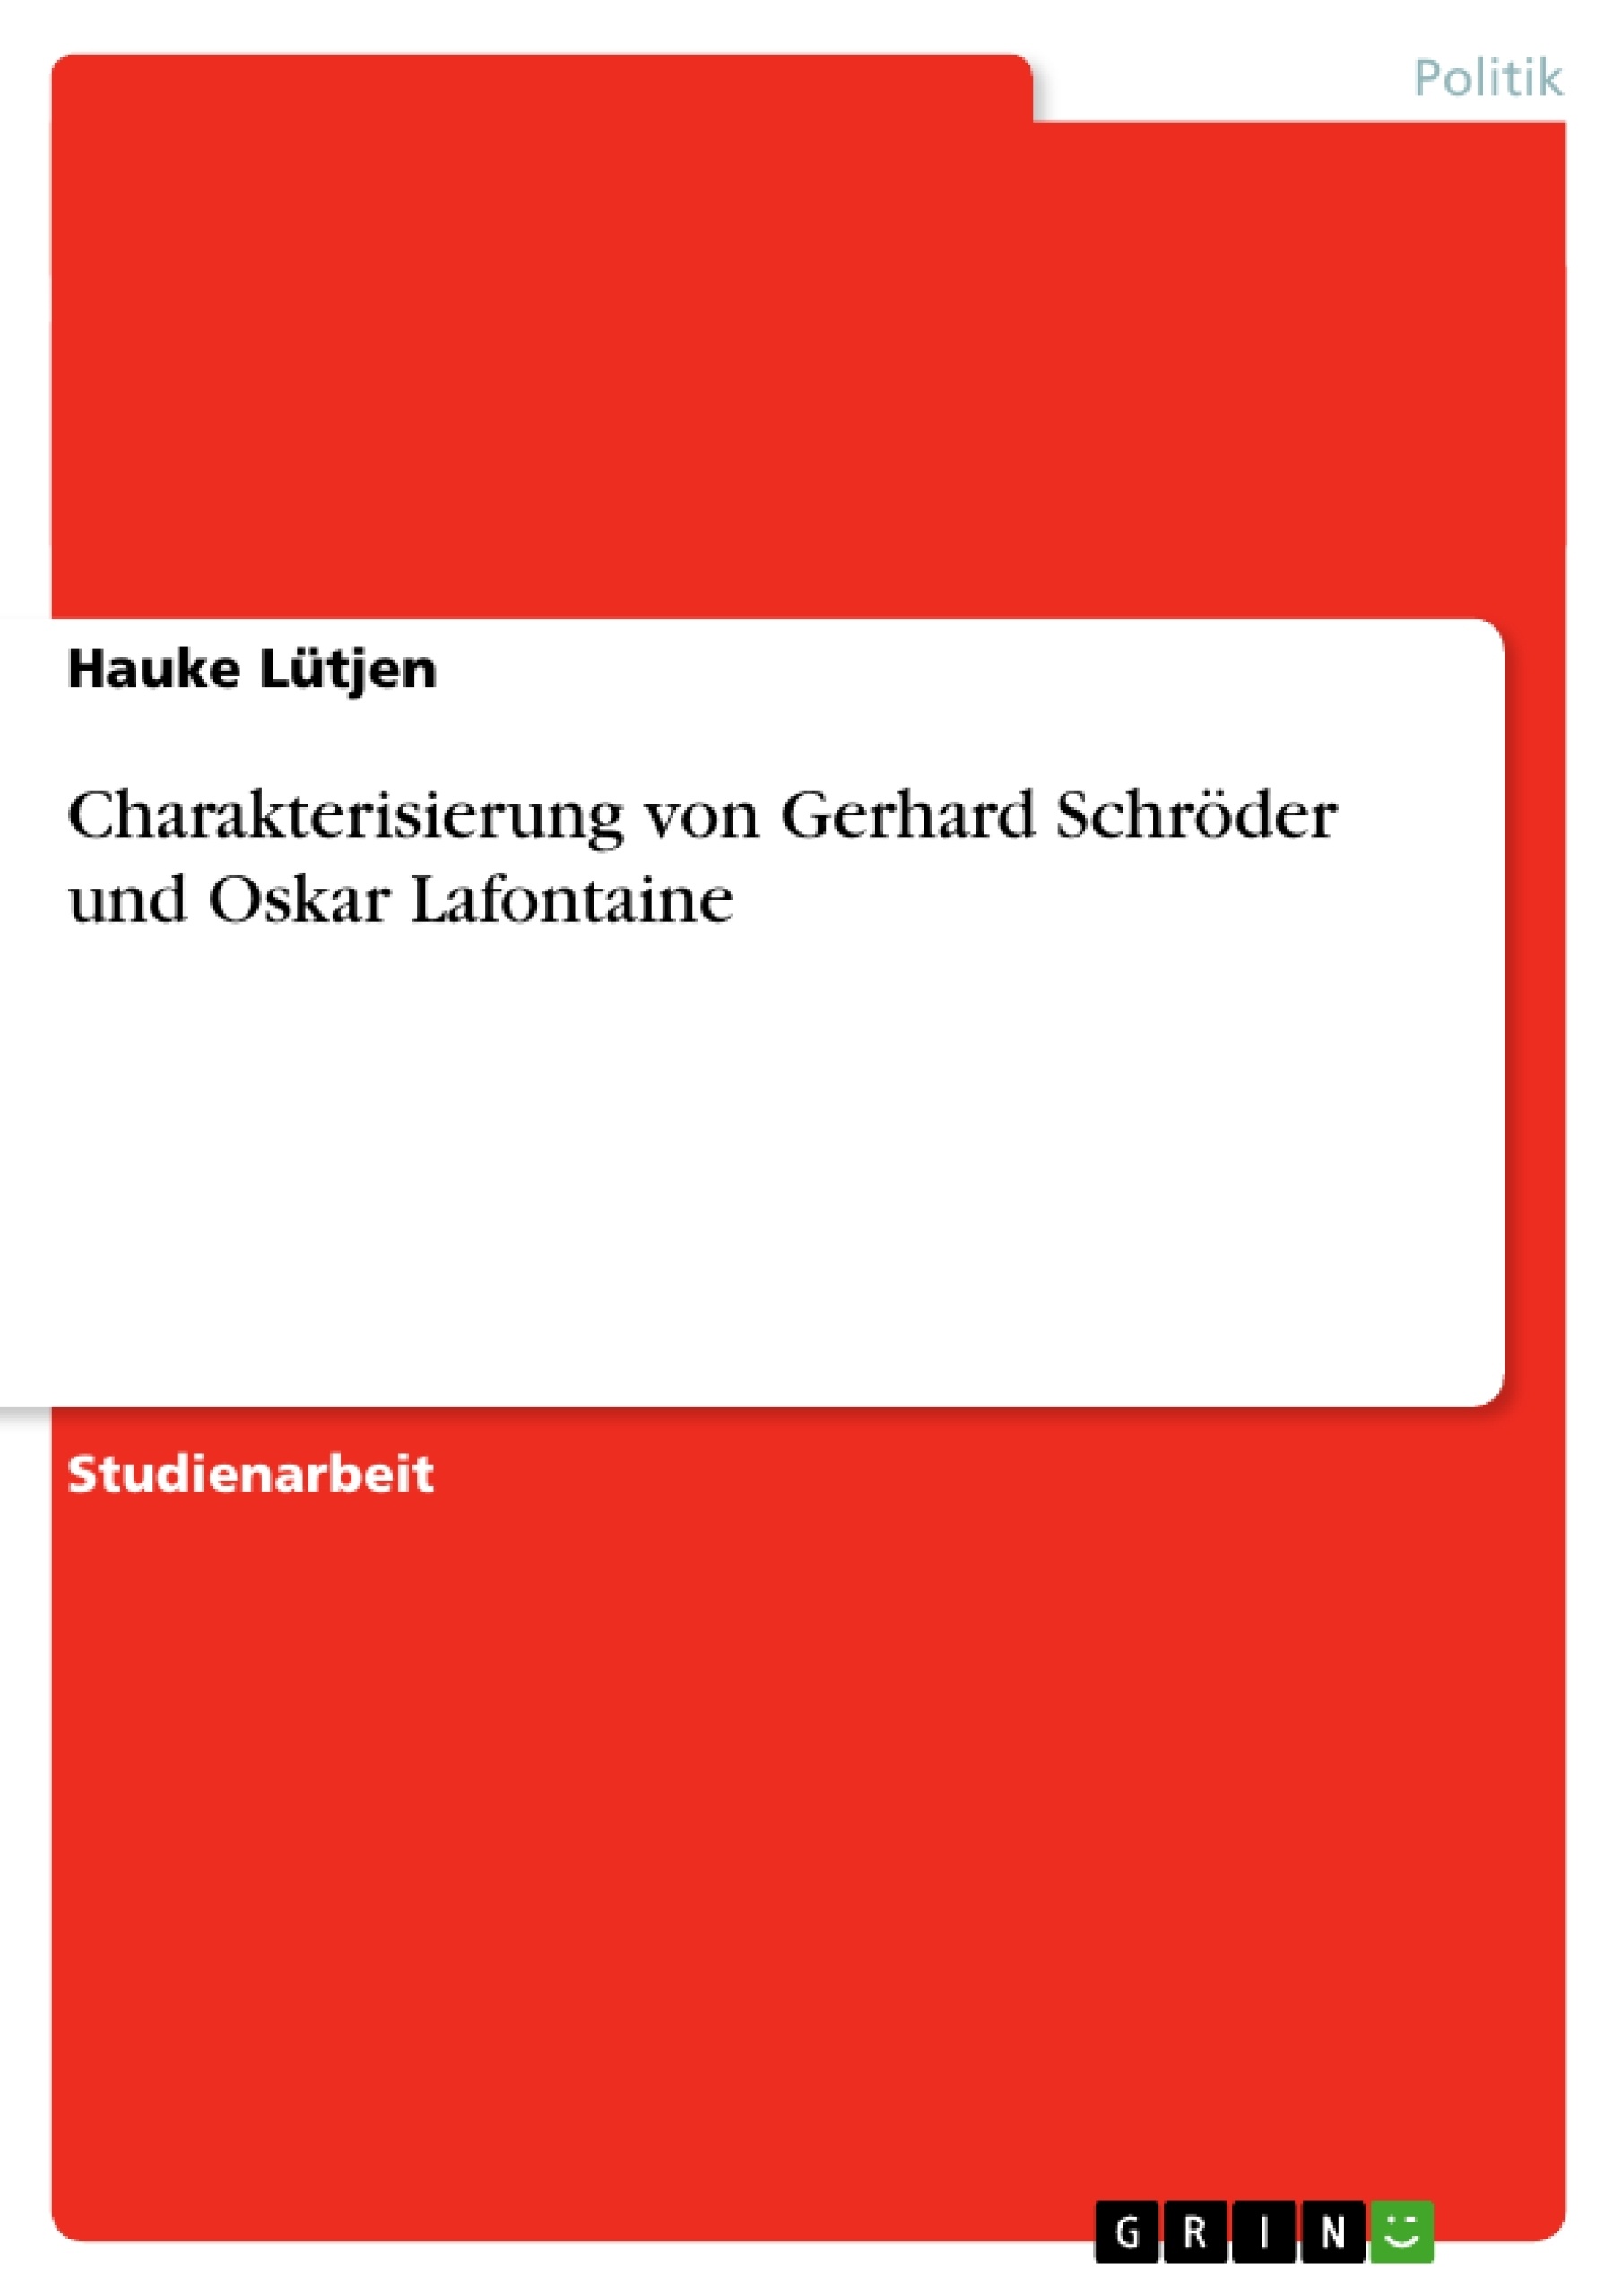 Title: Charakterisierung von Gerhard Schröder und Oskar Lafontaine